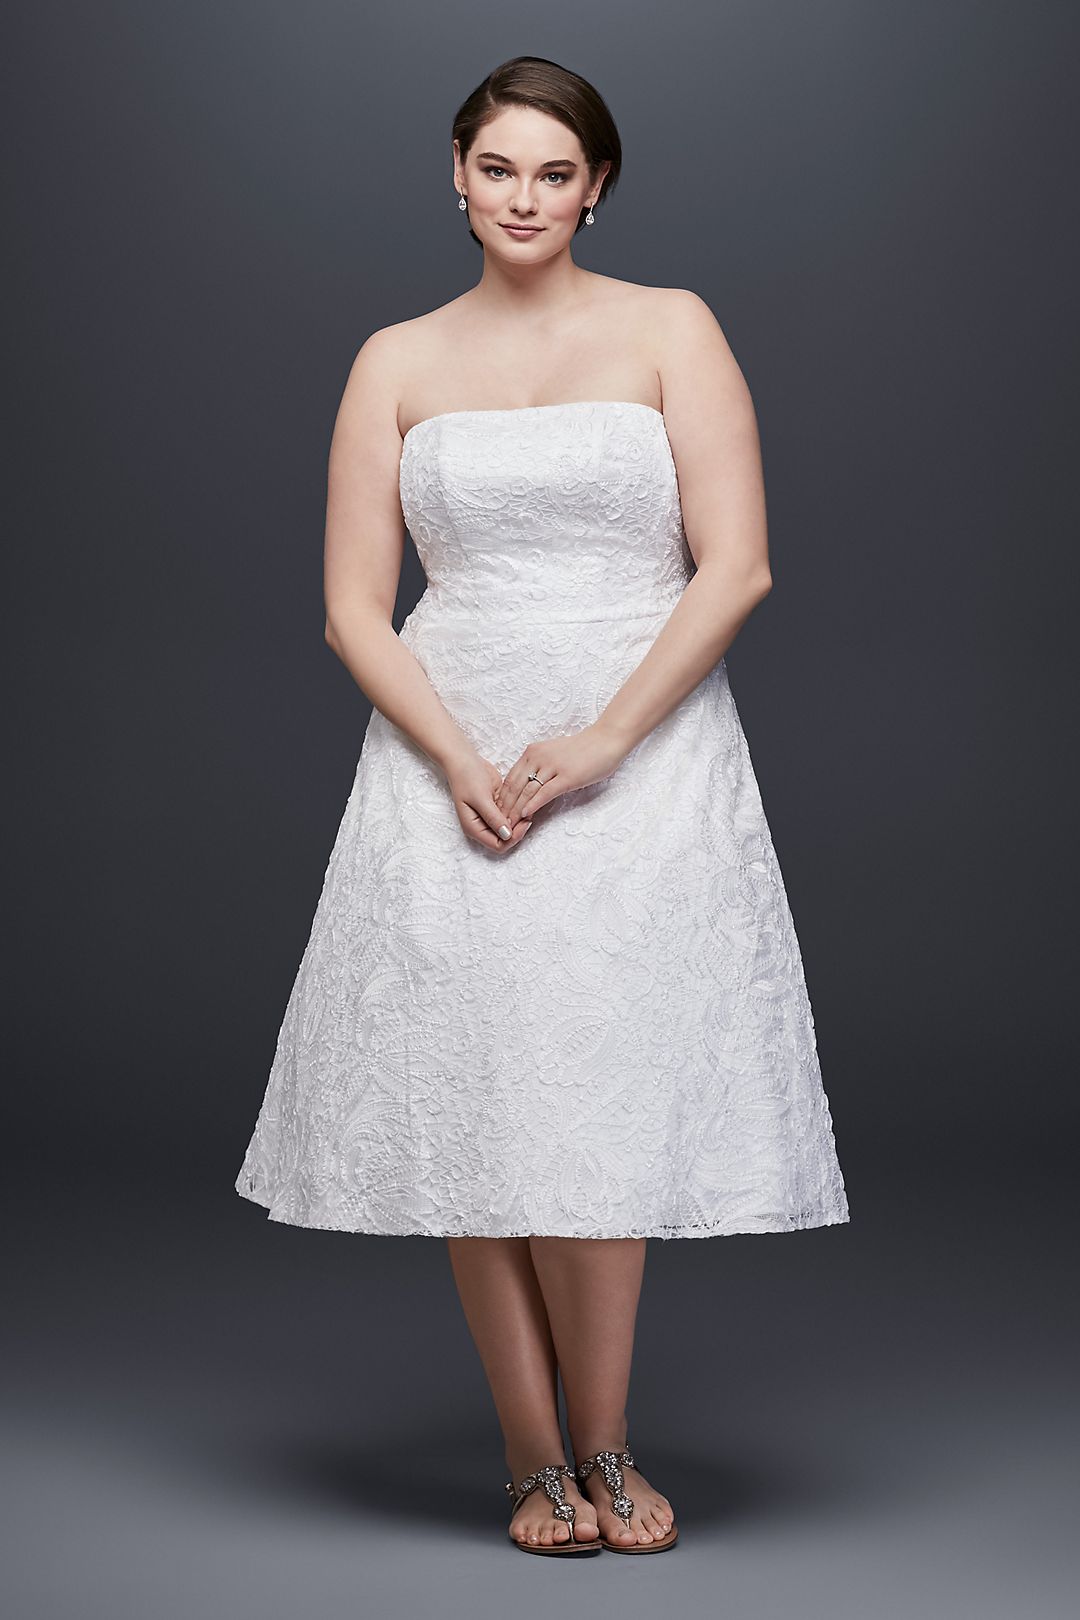 Soutache Lace Tea-Length Wedding Dress Image